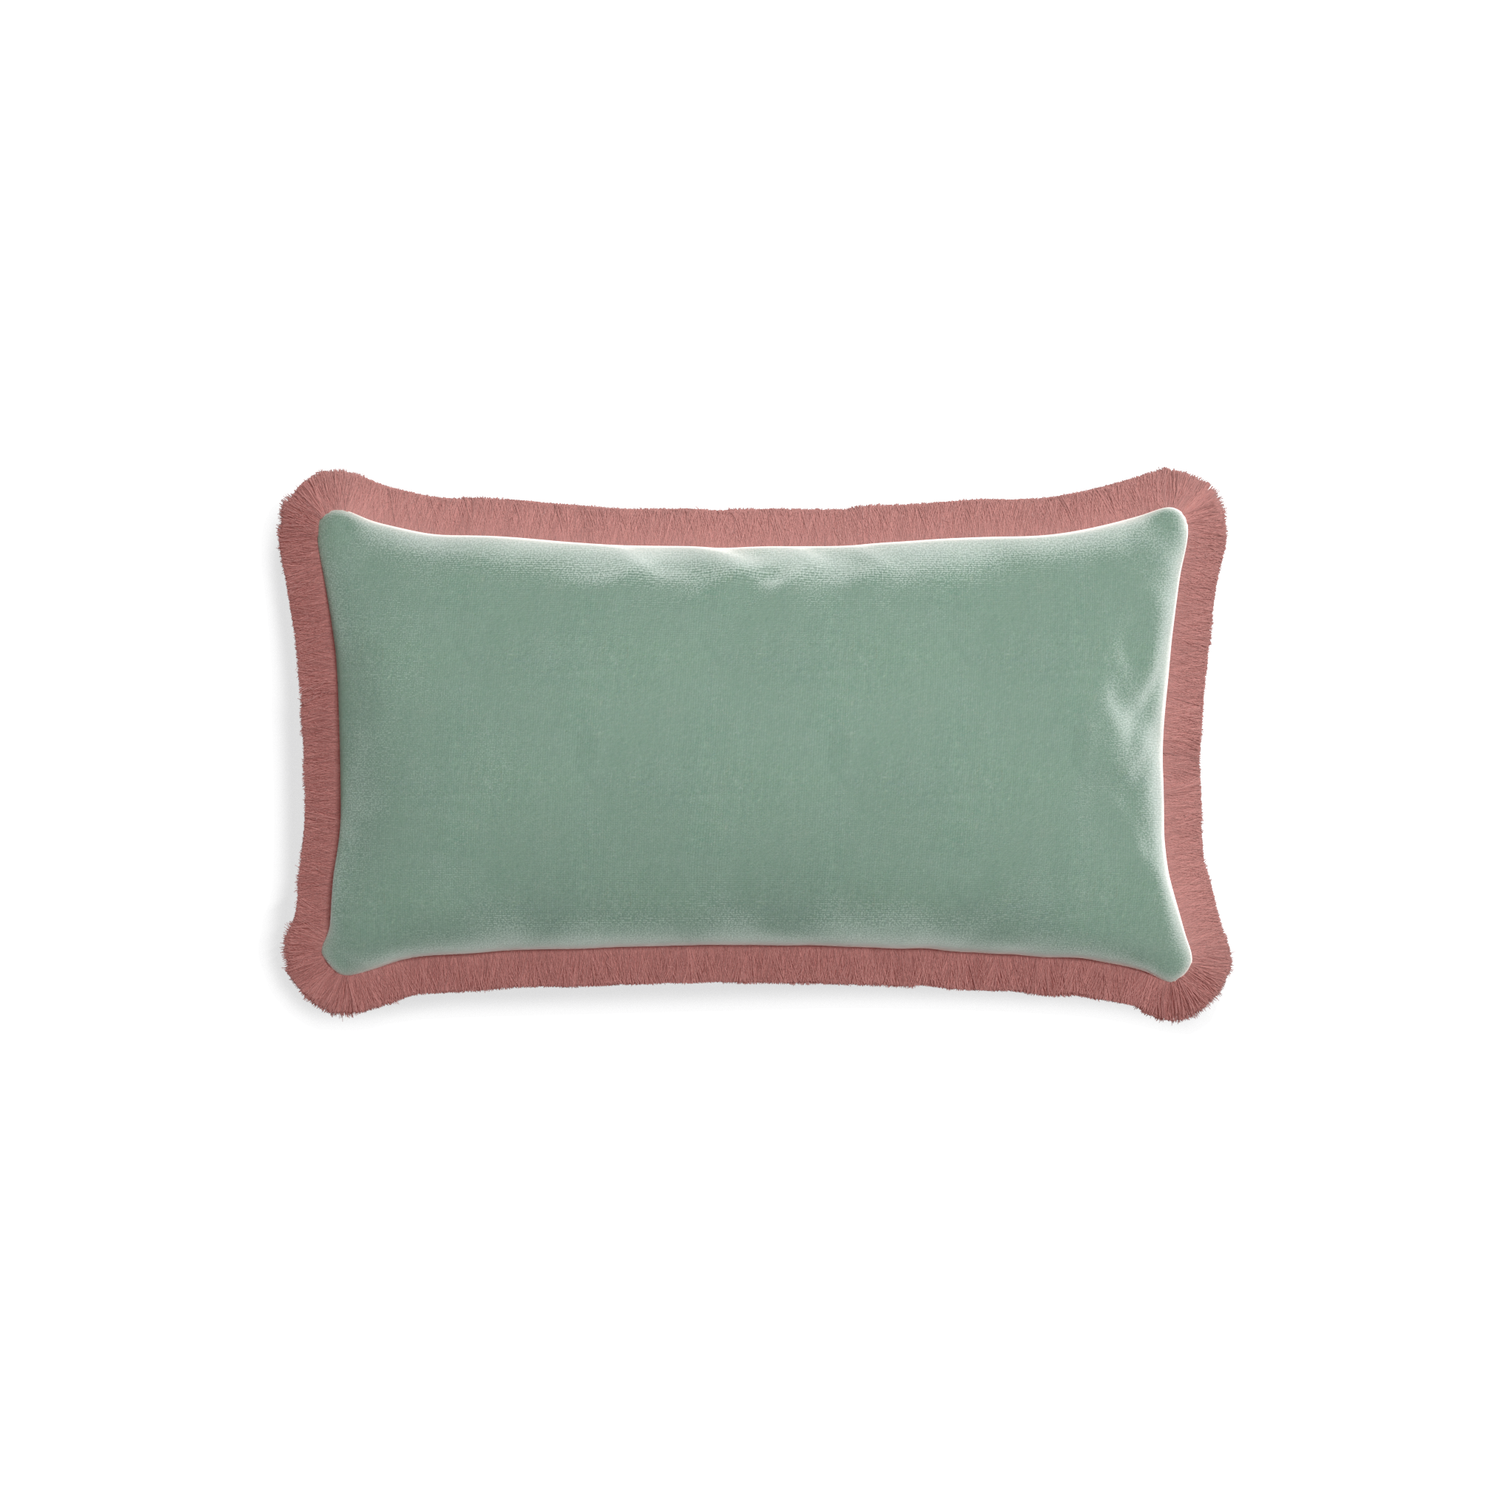 rectangle blue green velvet pillow with dusty rose fringe